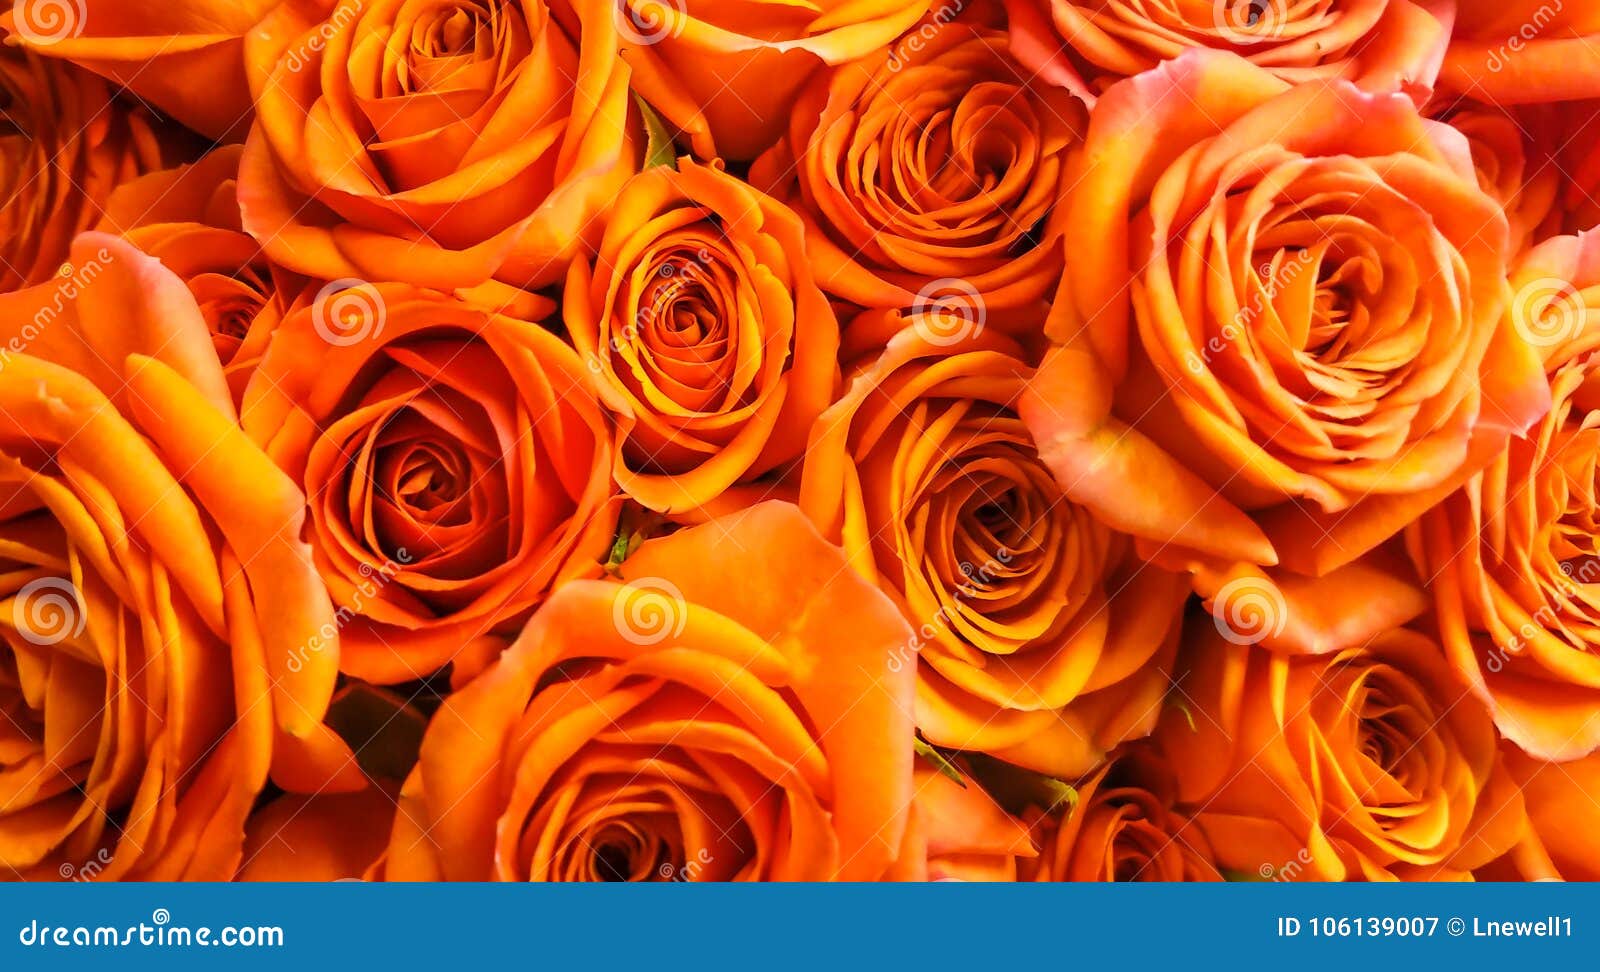 Hình nền hoa hồng cam đẹp này sẽ làm ngôi nhà của bạn trở nên sang trọng và lộng lẫy hơn. Với màu cam tươi sáng, hình nền này thật sự là một điểm nhấn tuyệt vời để tăng vẻ đẹp của phòng khách hoặc phòng ngủ. Hãy dành chút thời gian để thưởng thức và trang trí ngôi nhà của mình với hoa hồng cam đẹp như đồng hồ cát!